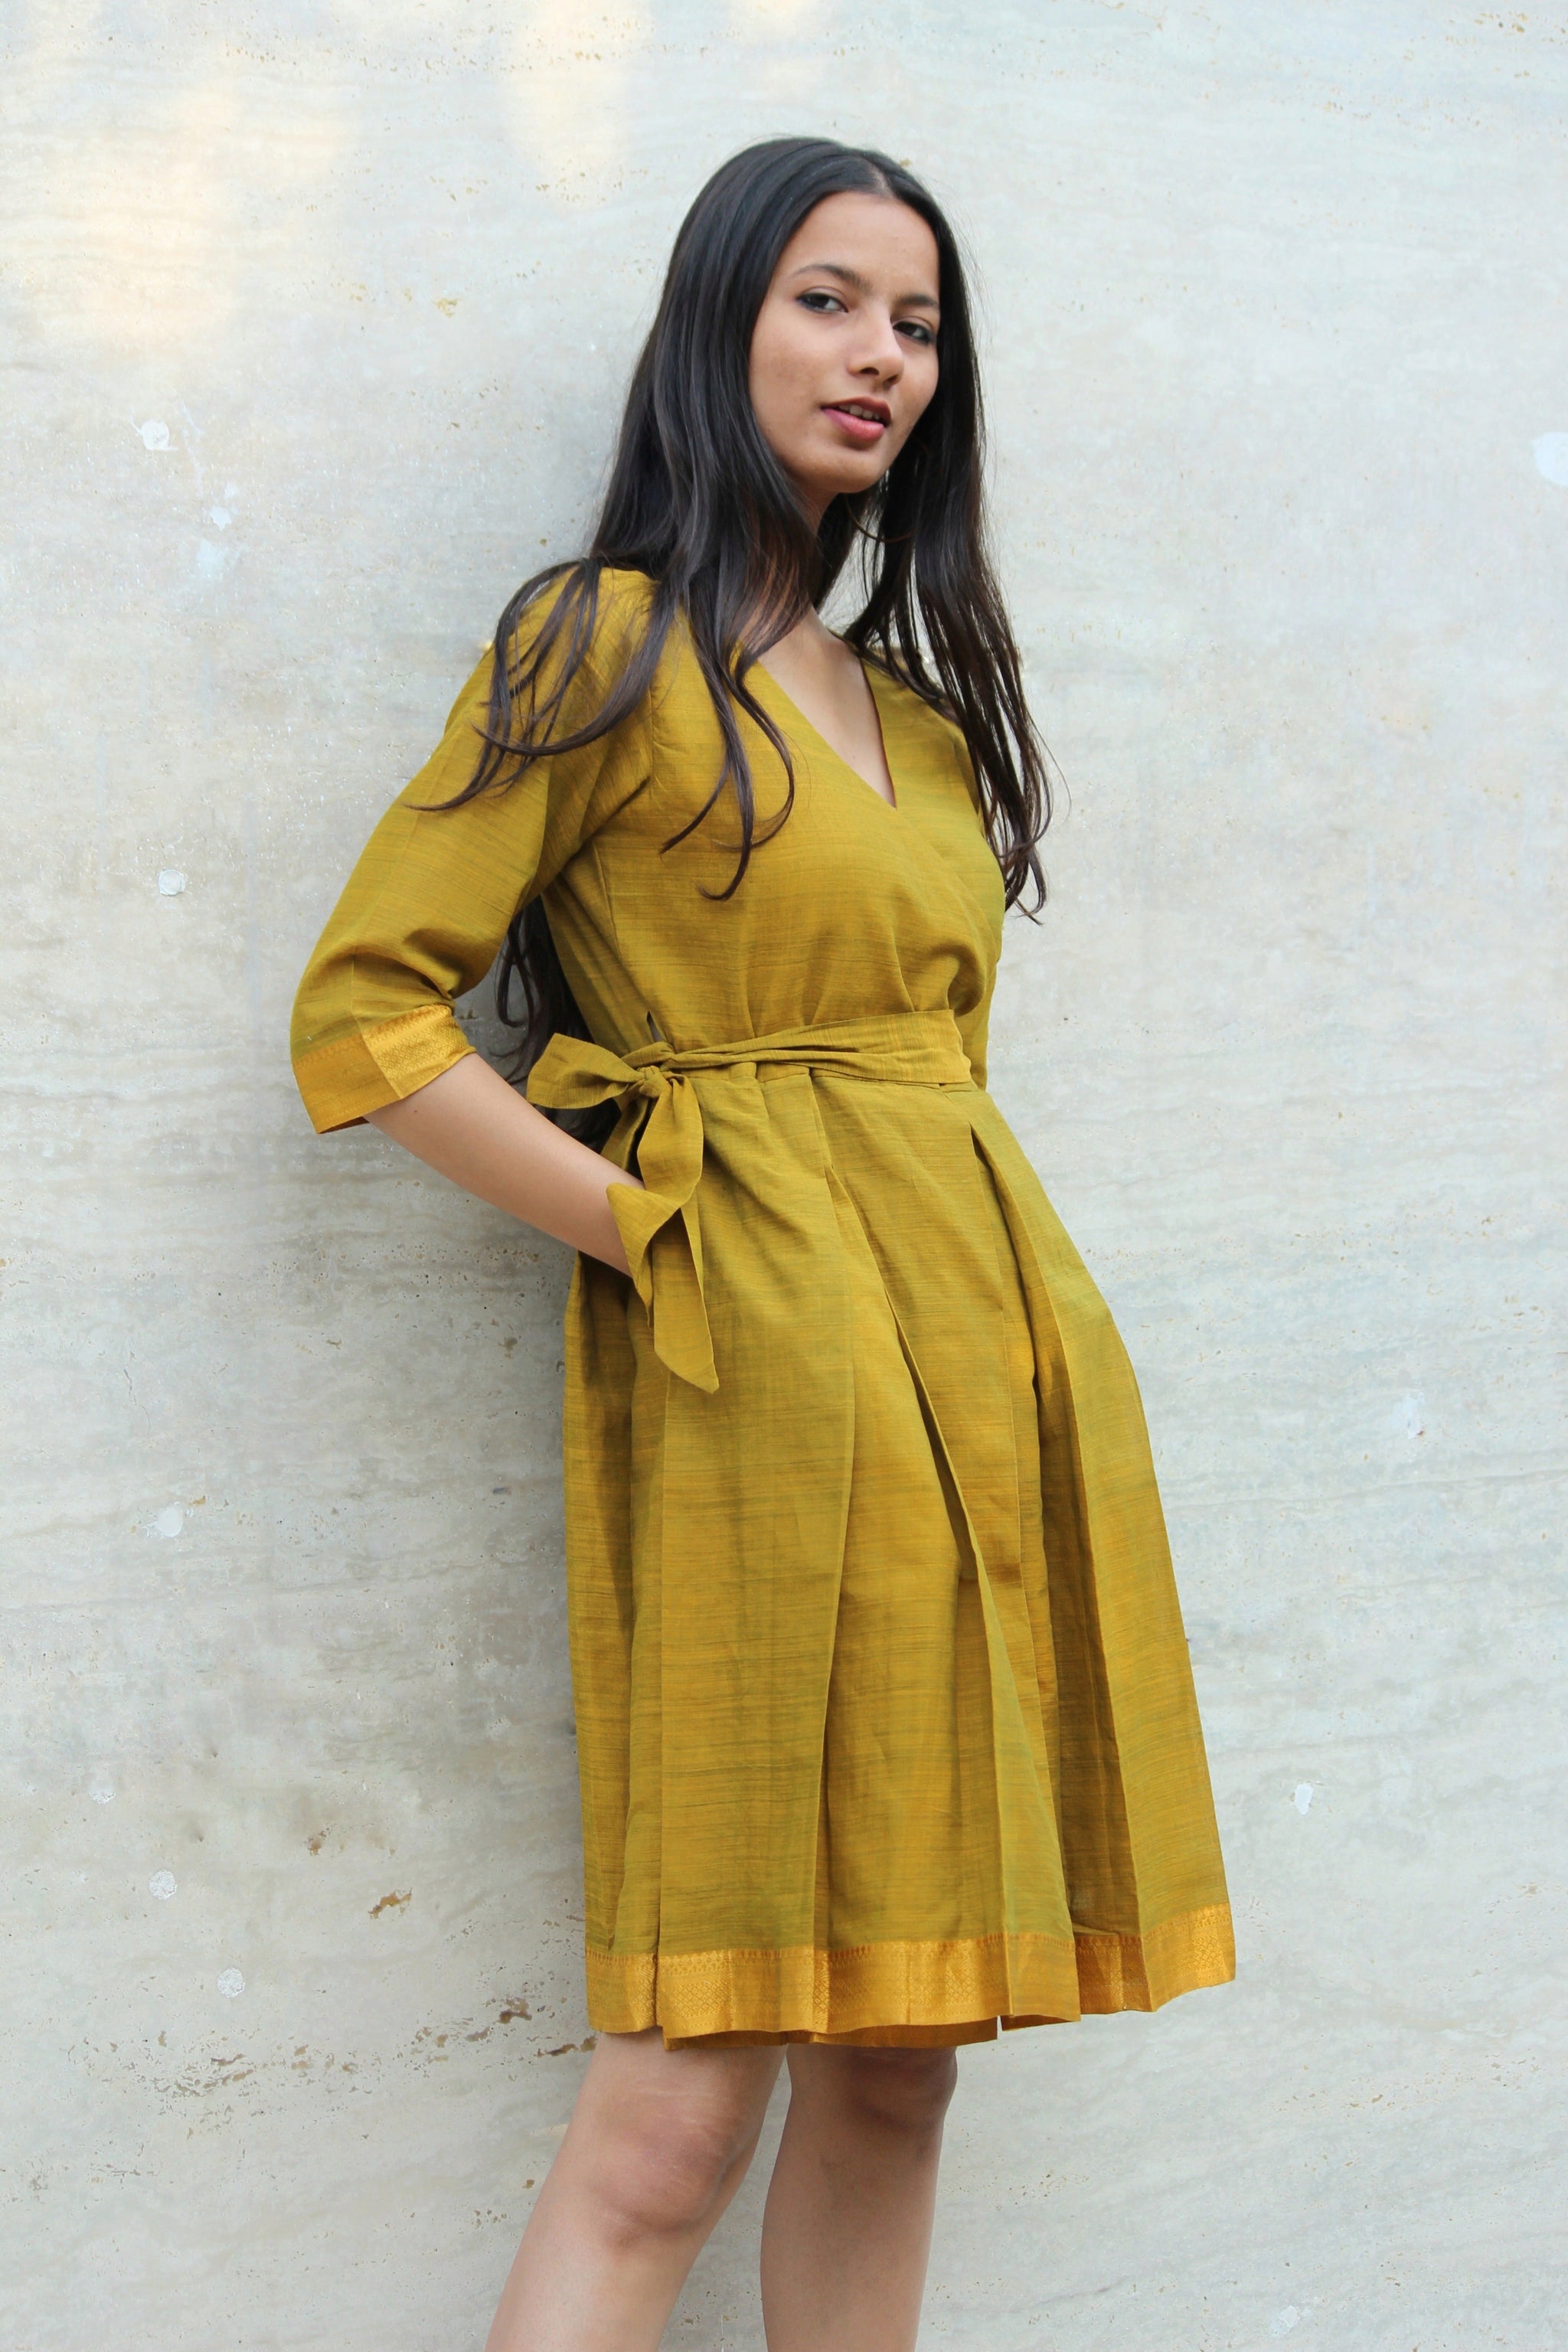 Discover more than 132 andhra pradesh dress super hot